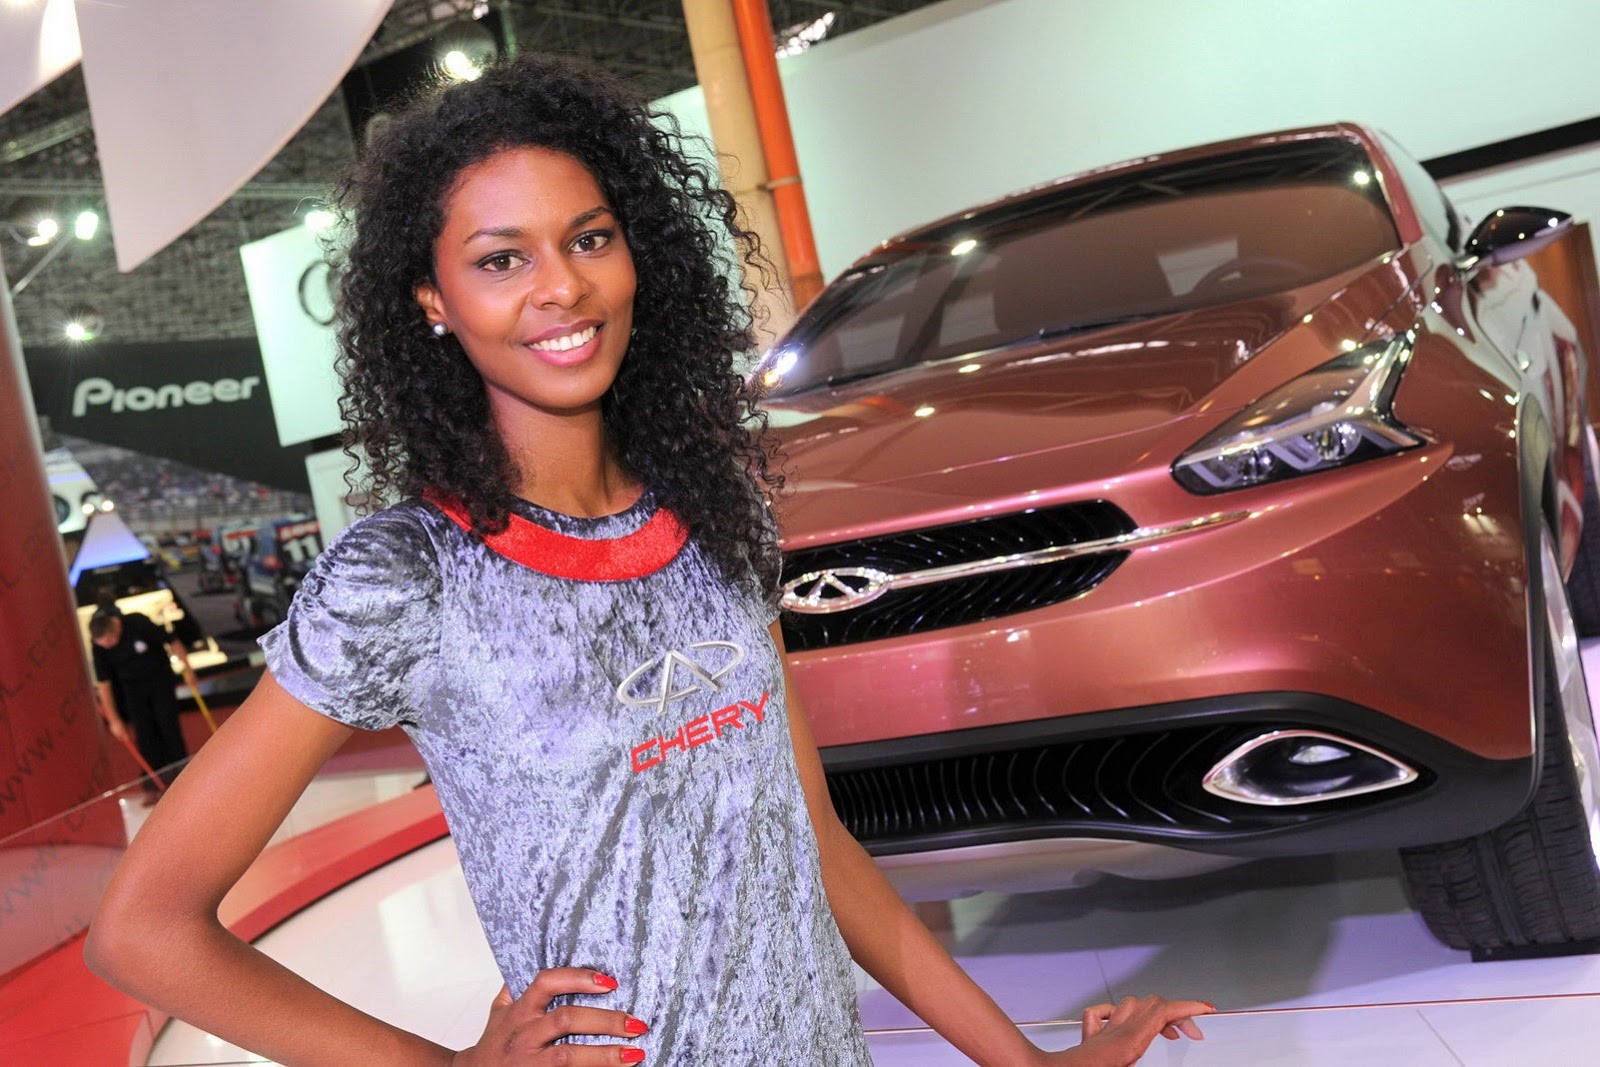 Бразильская модель 4 буквы. Девушки с бразильского автошоу. Девушки модели автовыставка 2012. Бразильская фотомодель и автомобиль. Бразильские девушки автосалон.